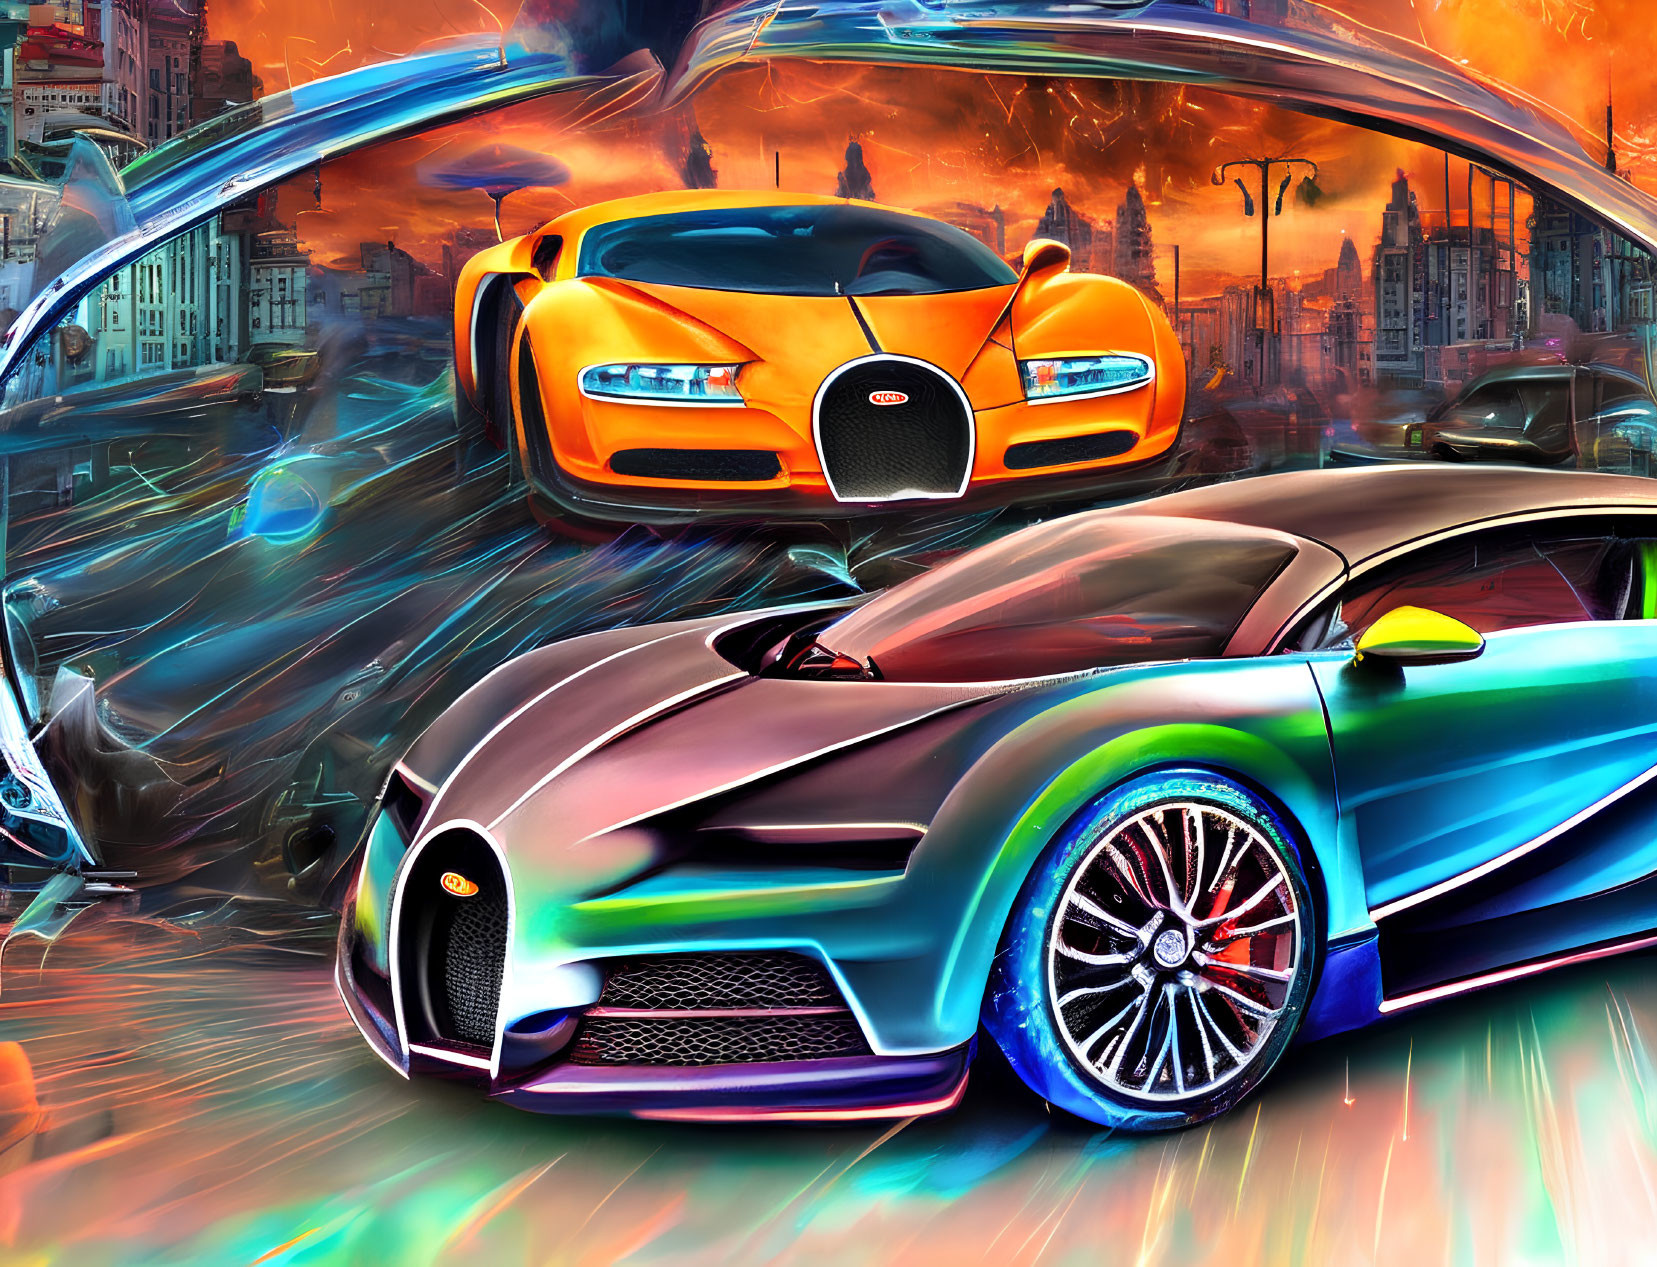 Dynamic digital artwork: Futuristic Bugatti cars in vibrant cityscape